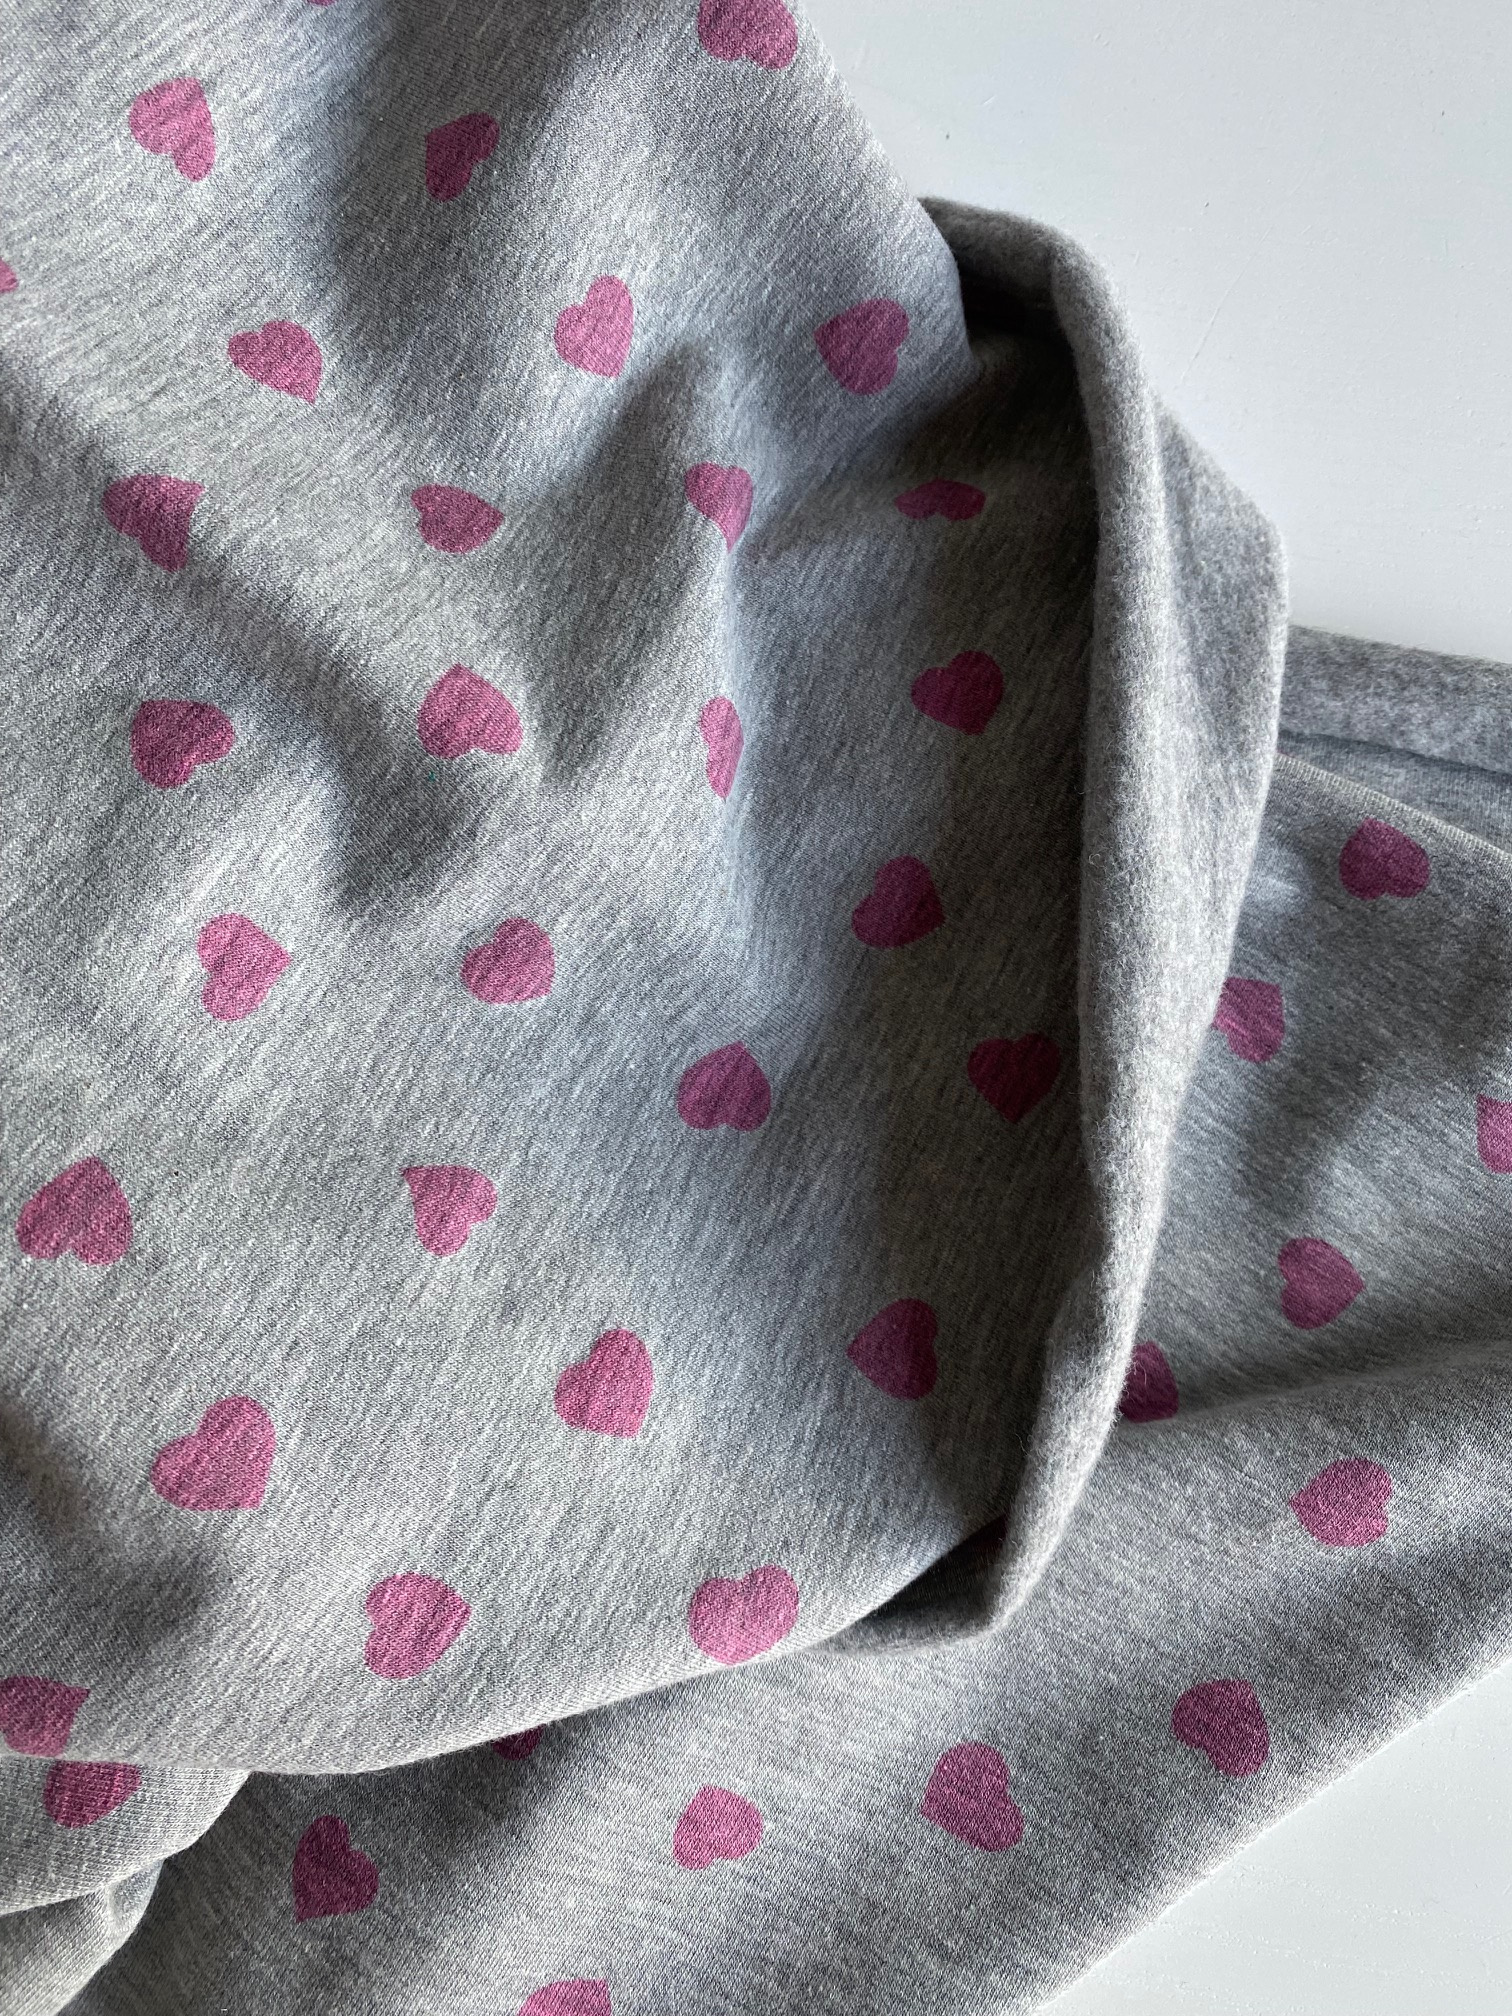 COUPON de Molleton fin gris chiné clair coeur-coeur coloris ROSE 1m60 x 150 cm